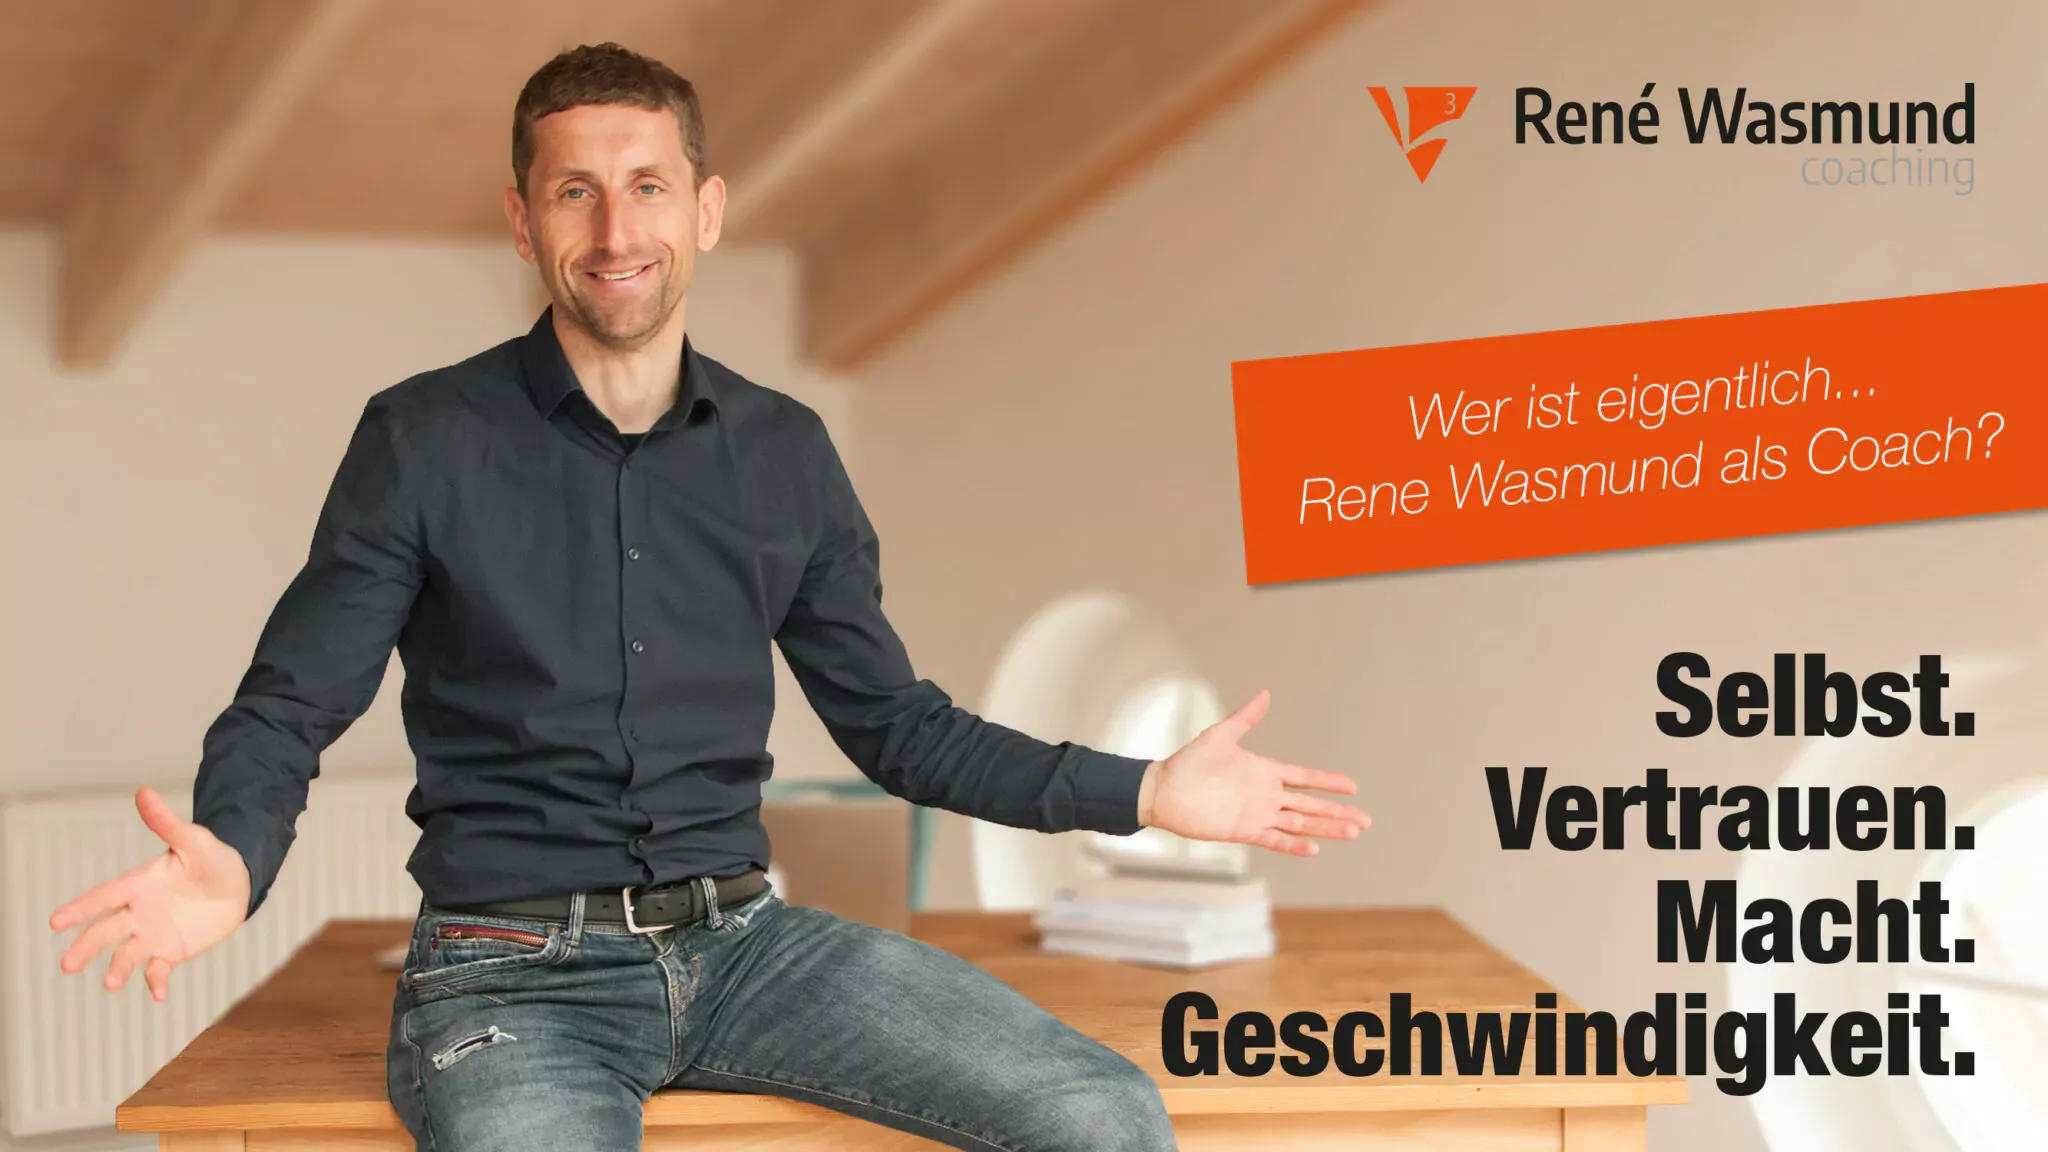 WER IST EIGENTLICH… RENE WASMUND ALS COACH? - L3 Coaching René Wasmund